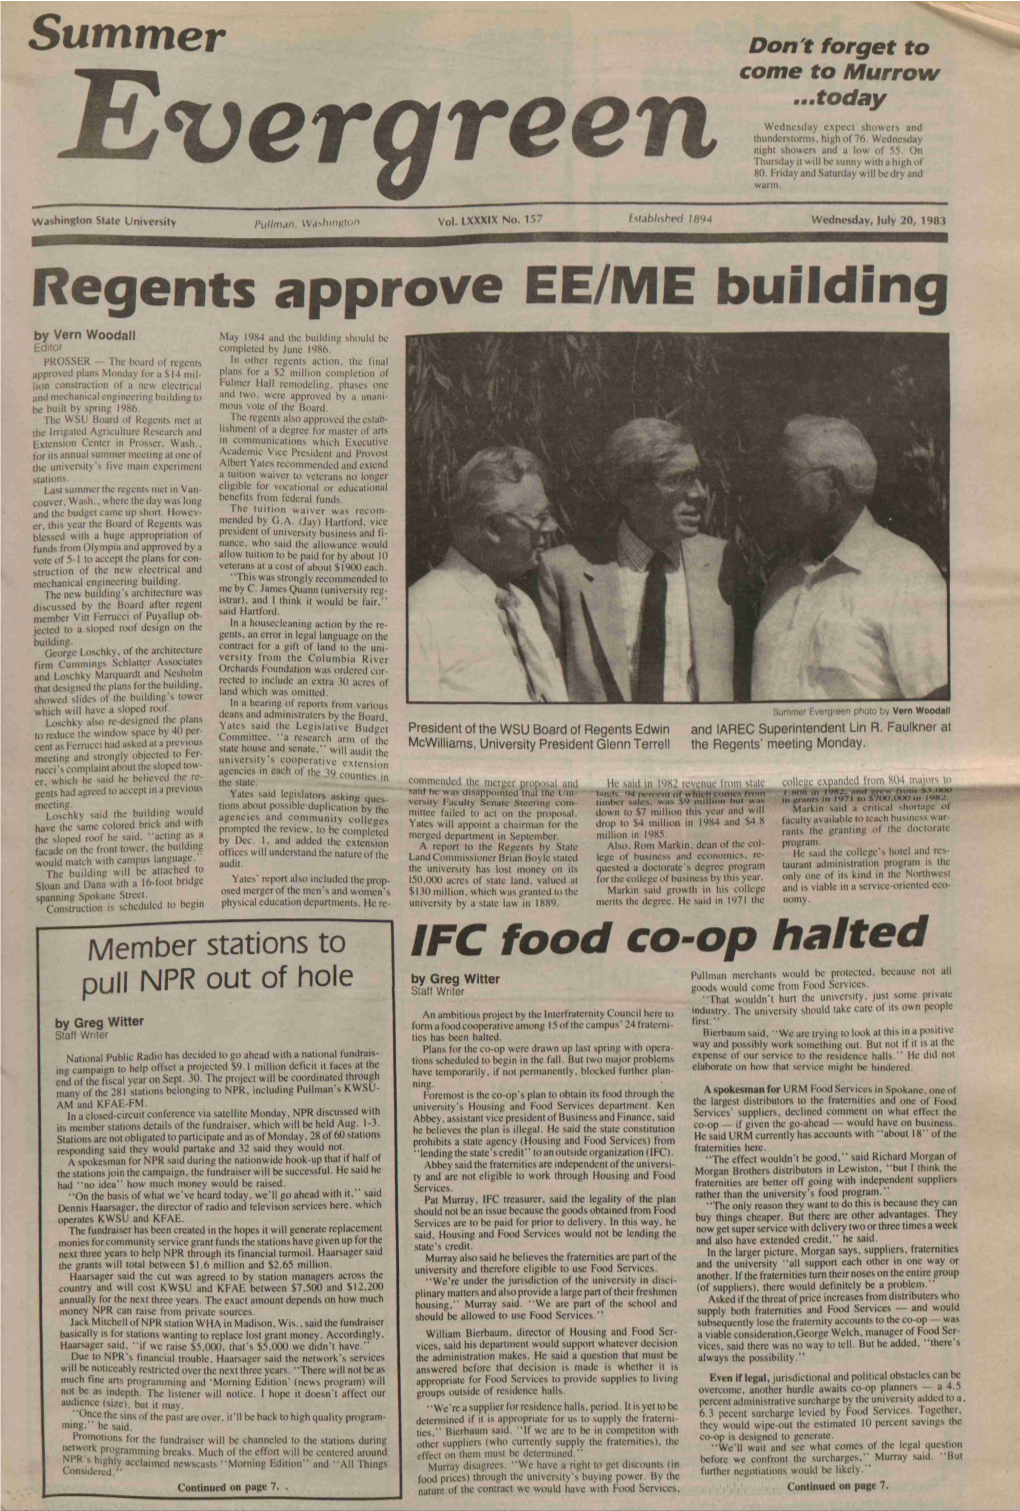 Regents Approve EE/ME Building